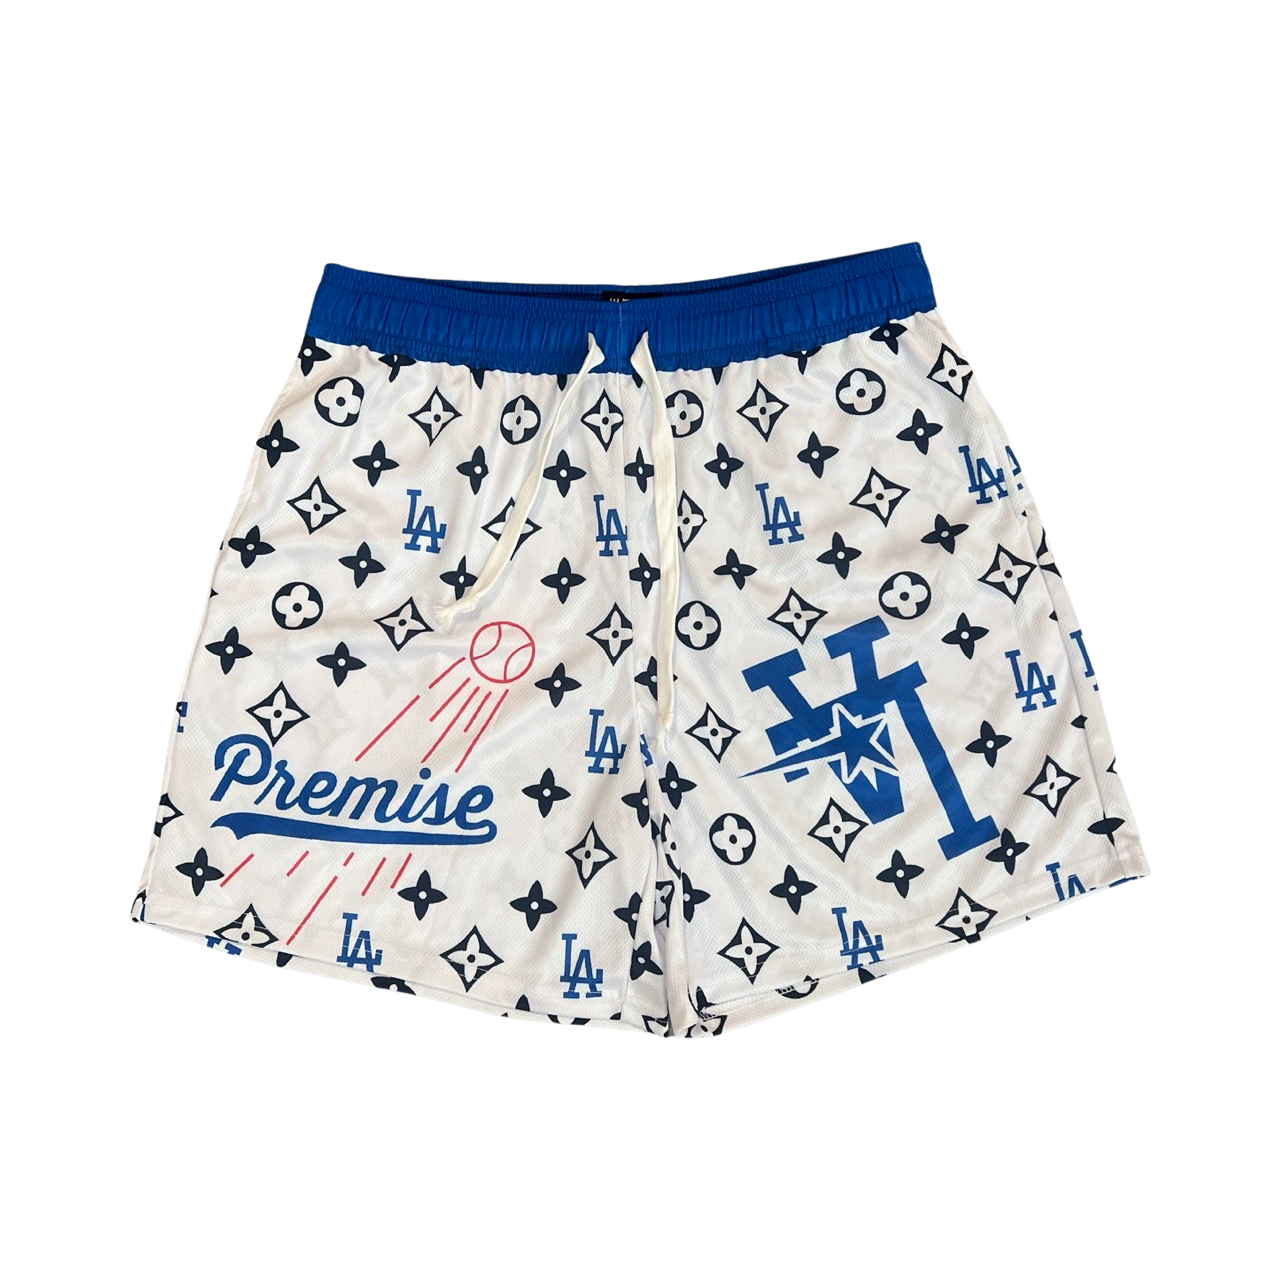 LA Dodgers (Premise) Mesh Shorts